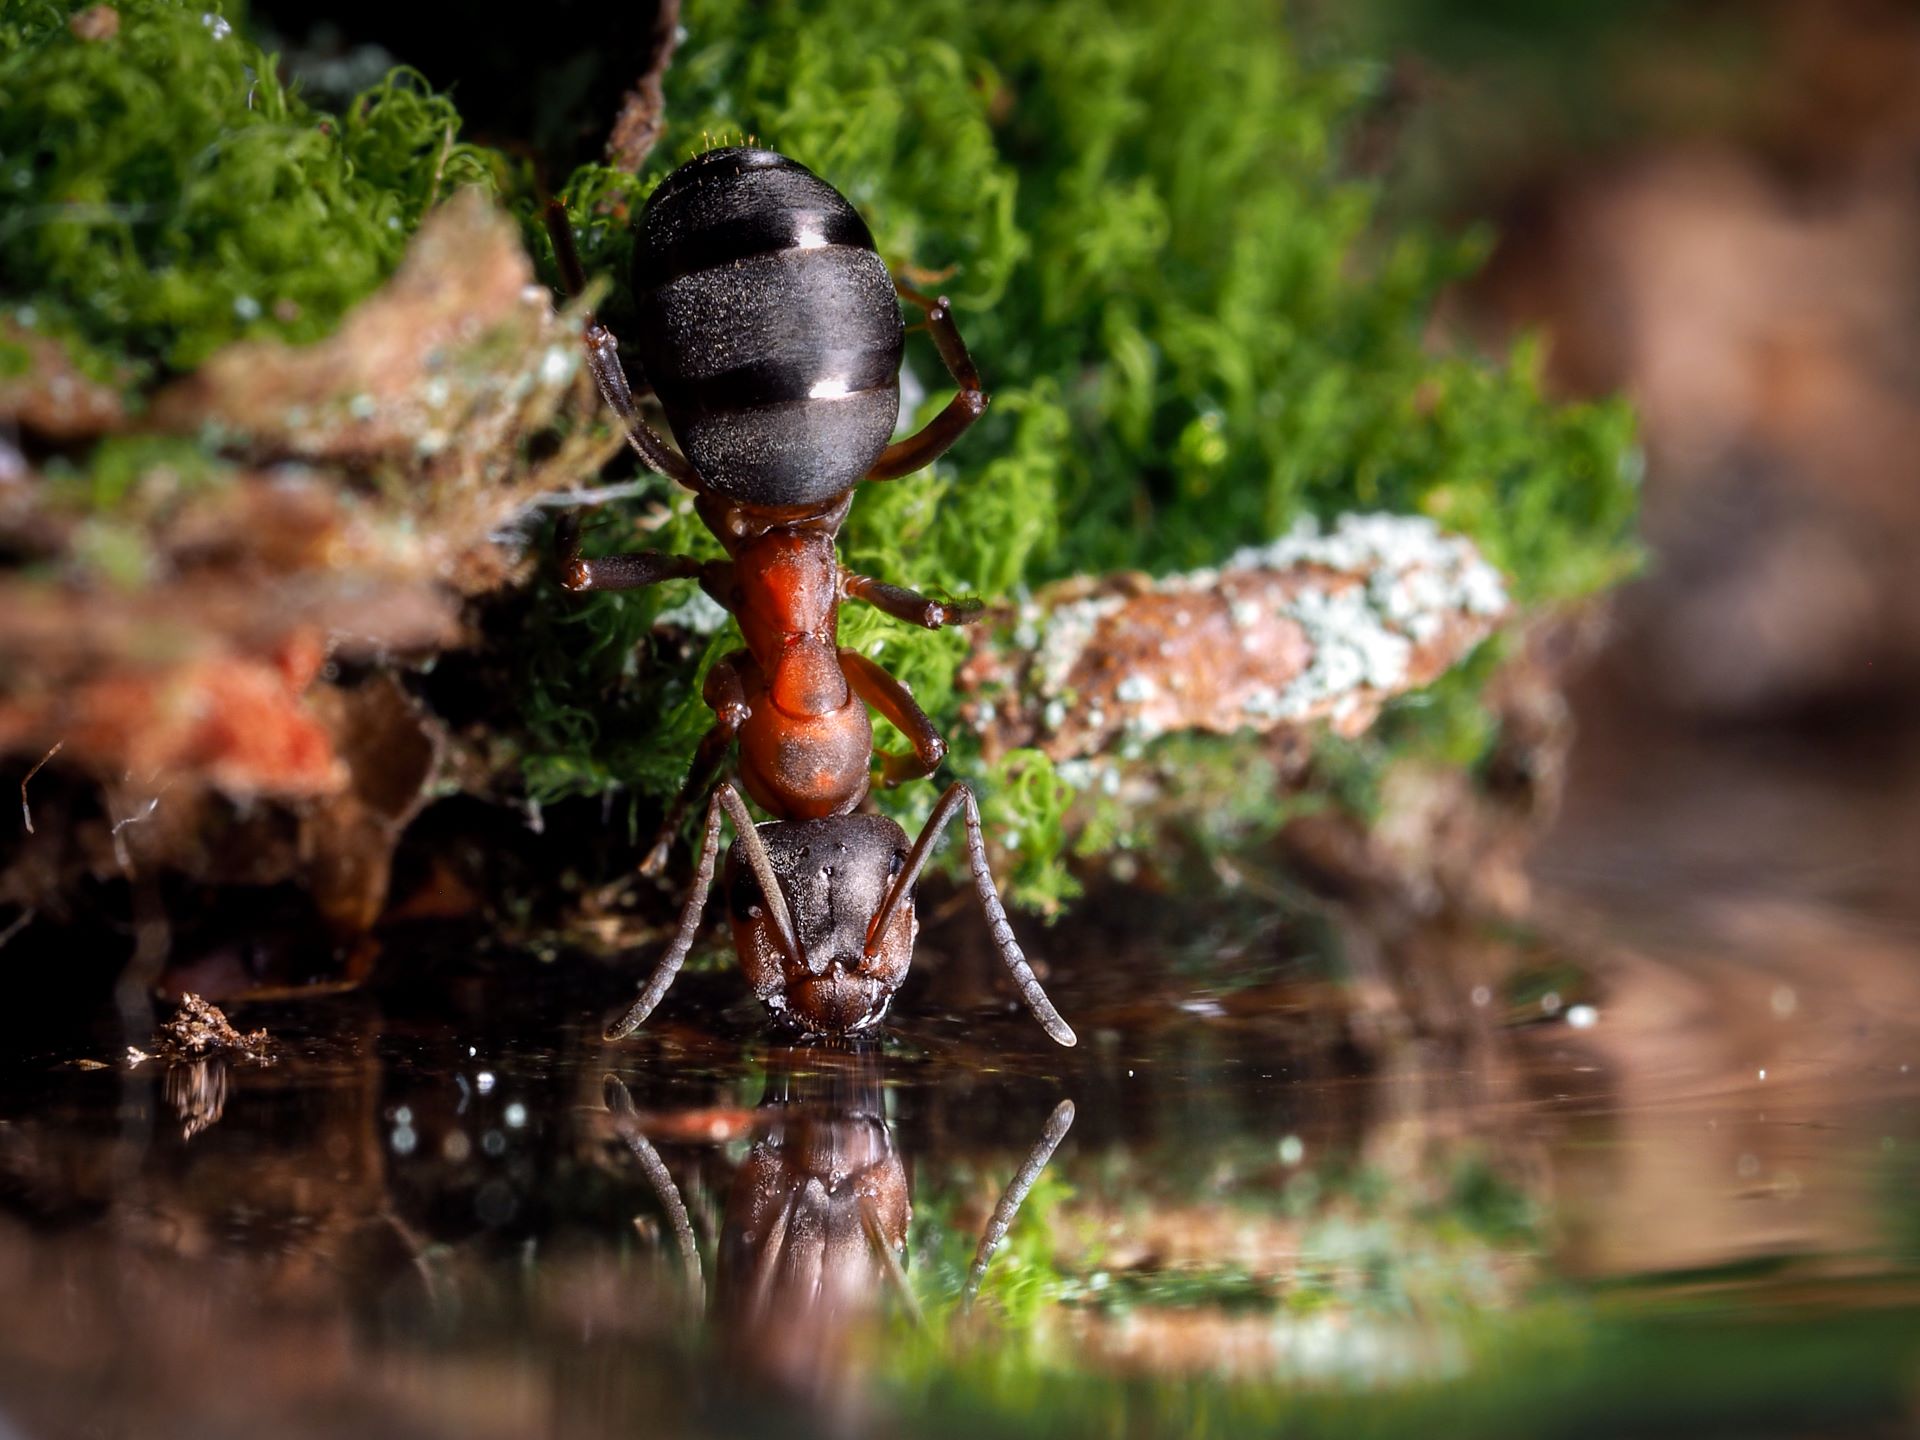 Ameisen können sich an Moos in Insektentränken gut festhalten, um ans Wasser zu gelangen. [Foto: AdobeStock_kozorog]